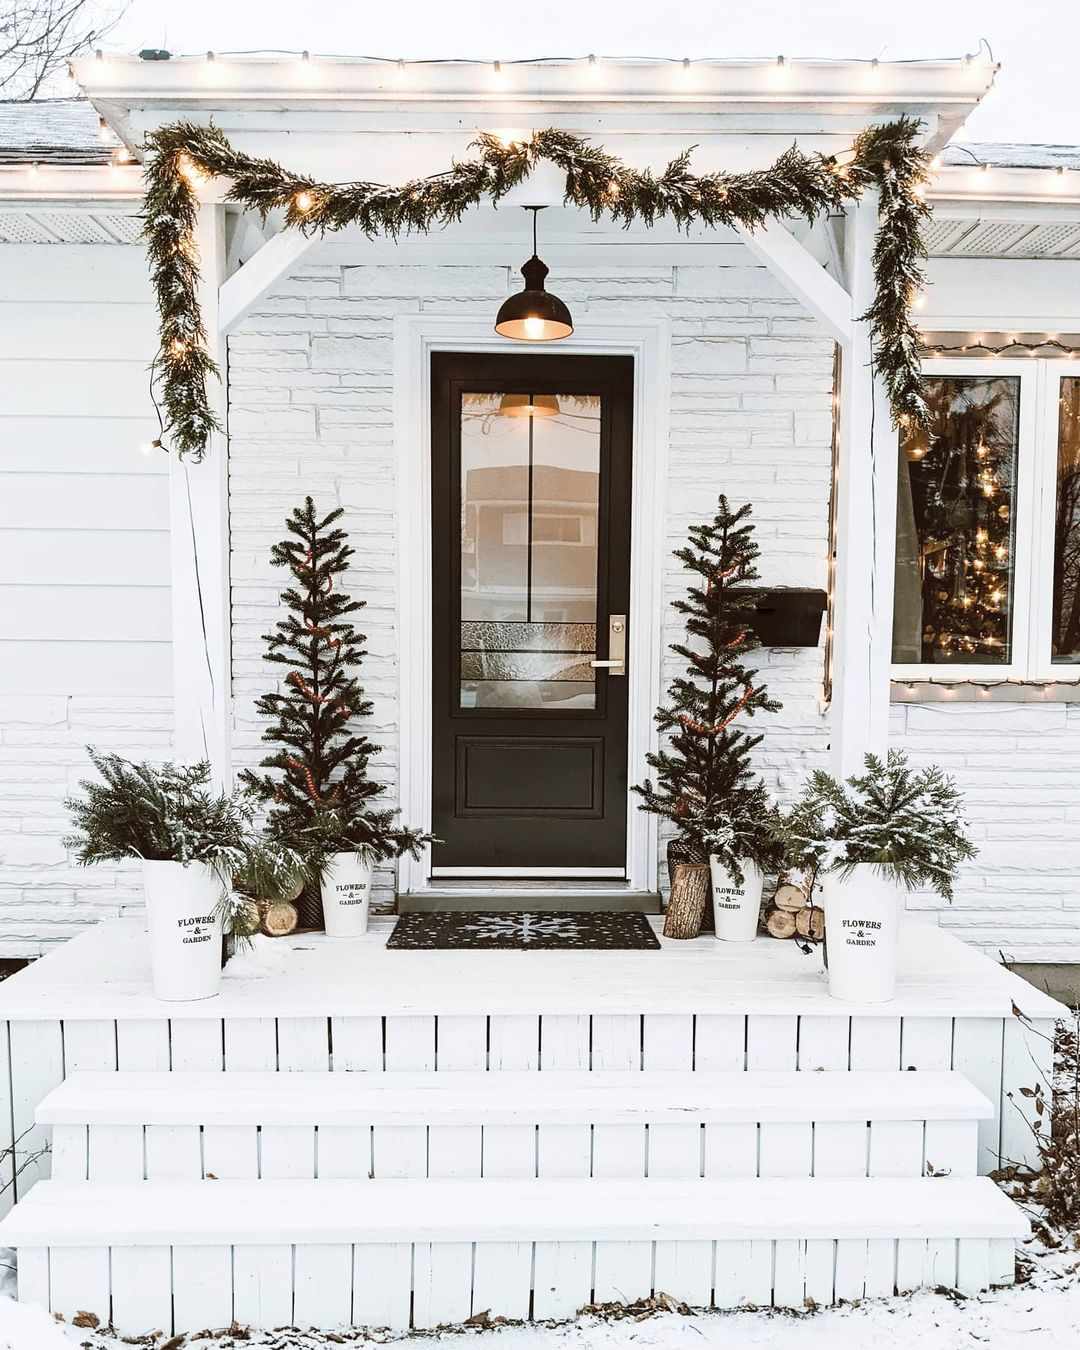 Eine weiße, mit Weihnachtsgrün geschmückte Hausfassade.